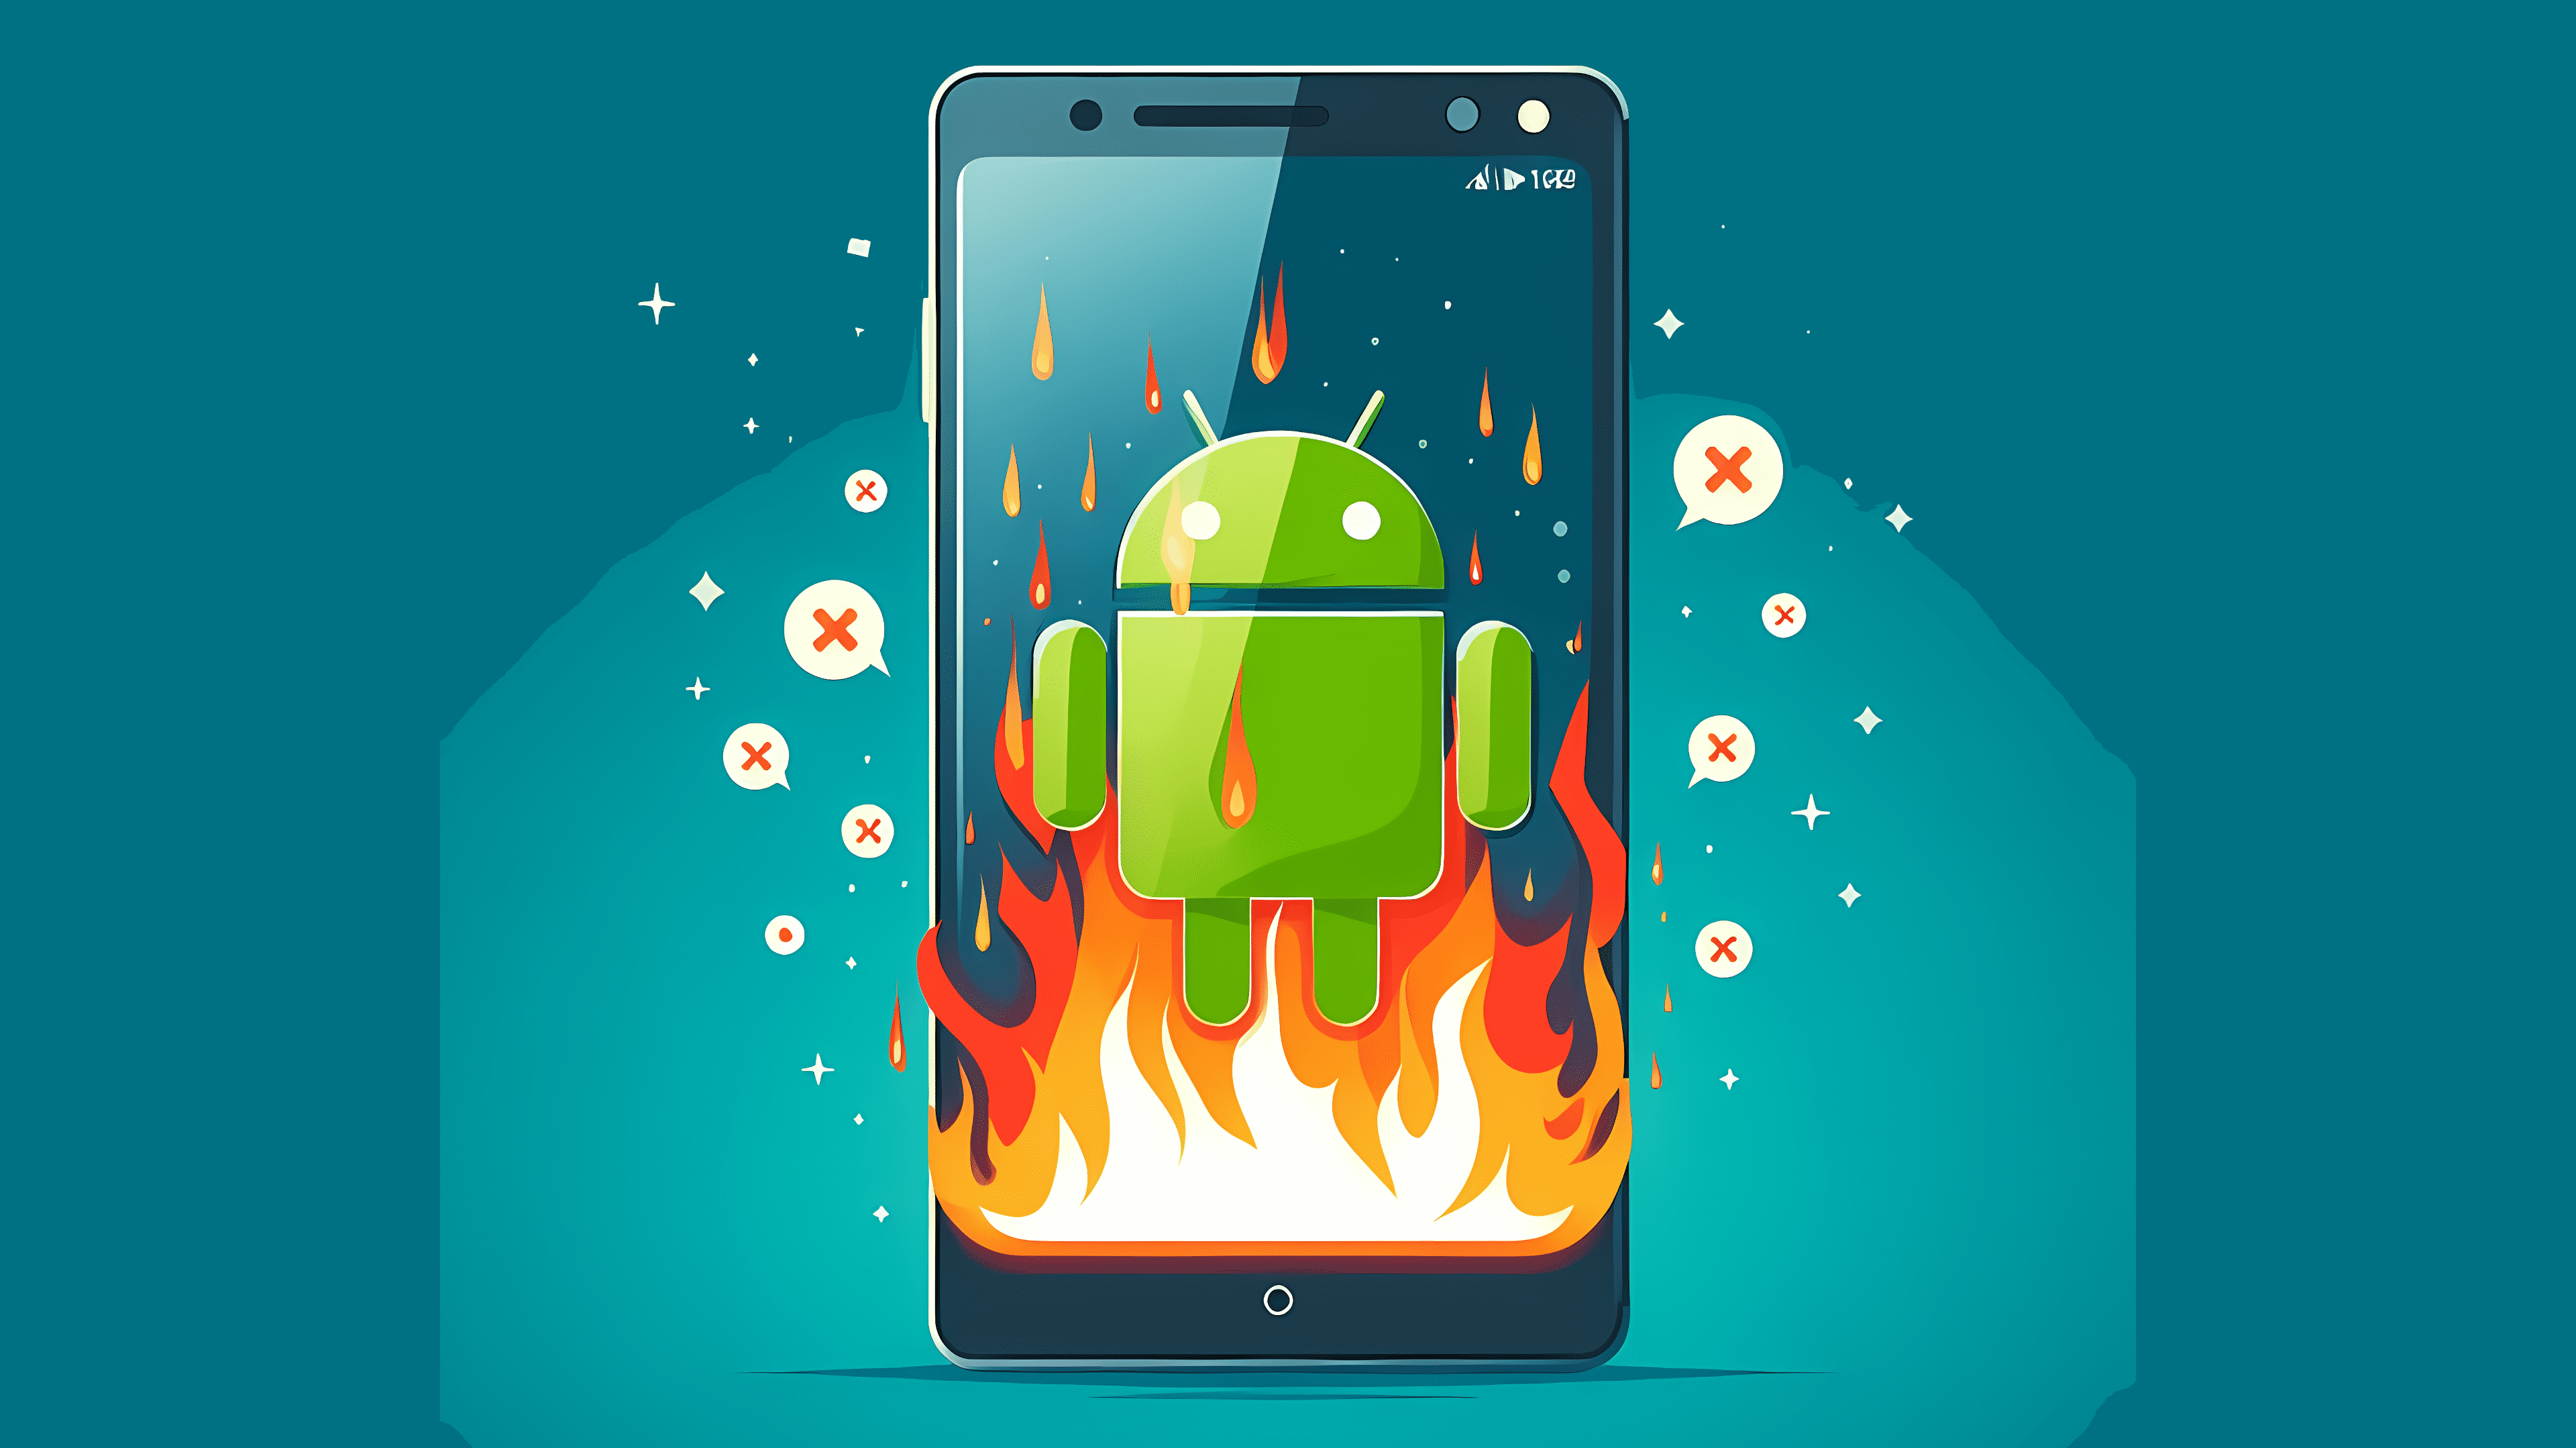 Stilisiertes Bild: Smartphone mit Android-Roboter auf dem Bildschirm, steht in Flammen